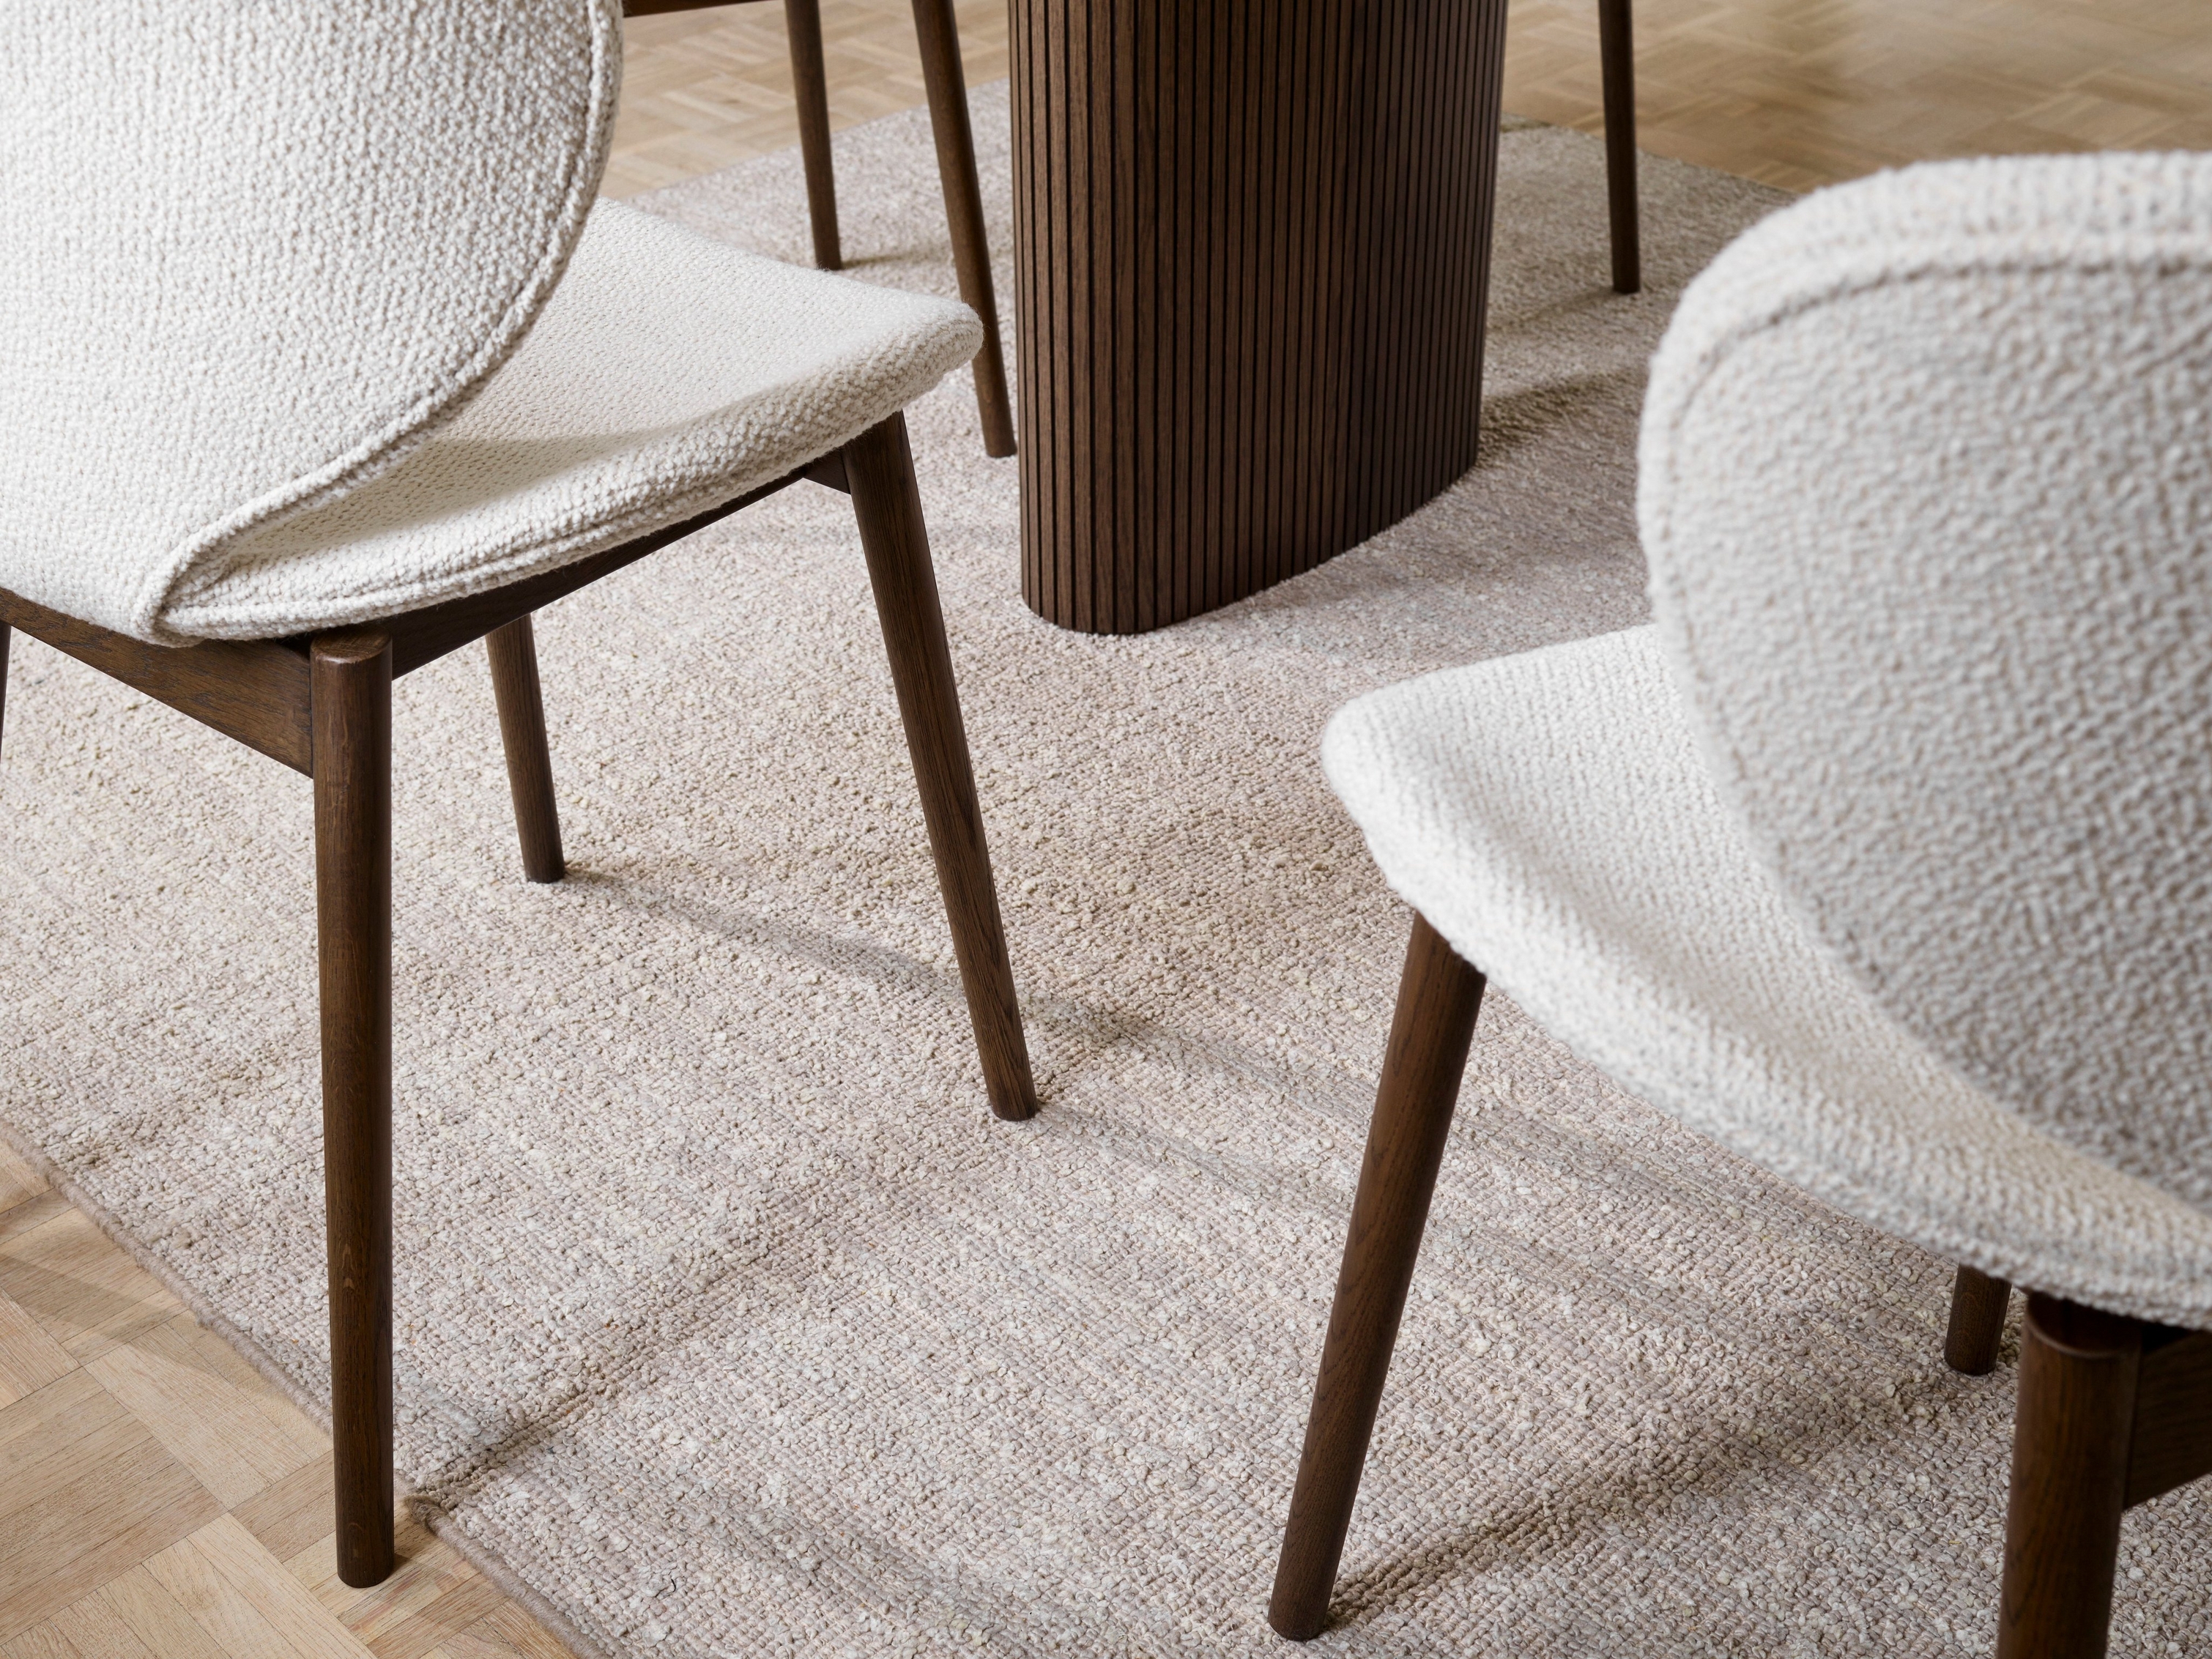 Chaises Hamilton texturées sur un tapis avec une table en bois. Focalisation sur les détails du sol.